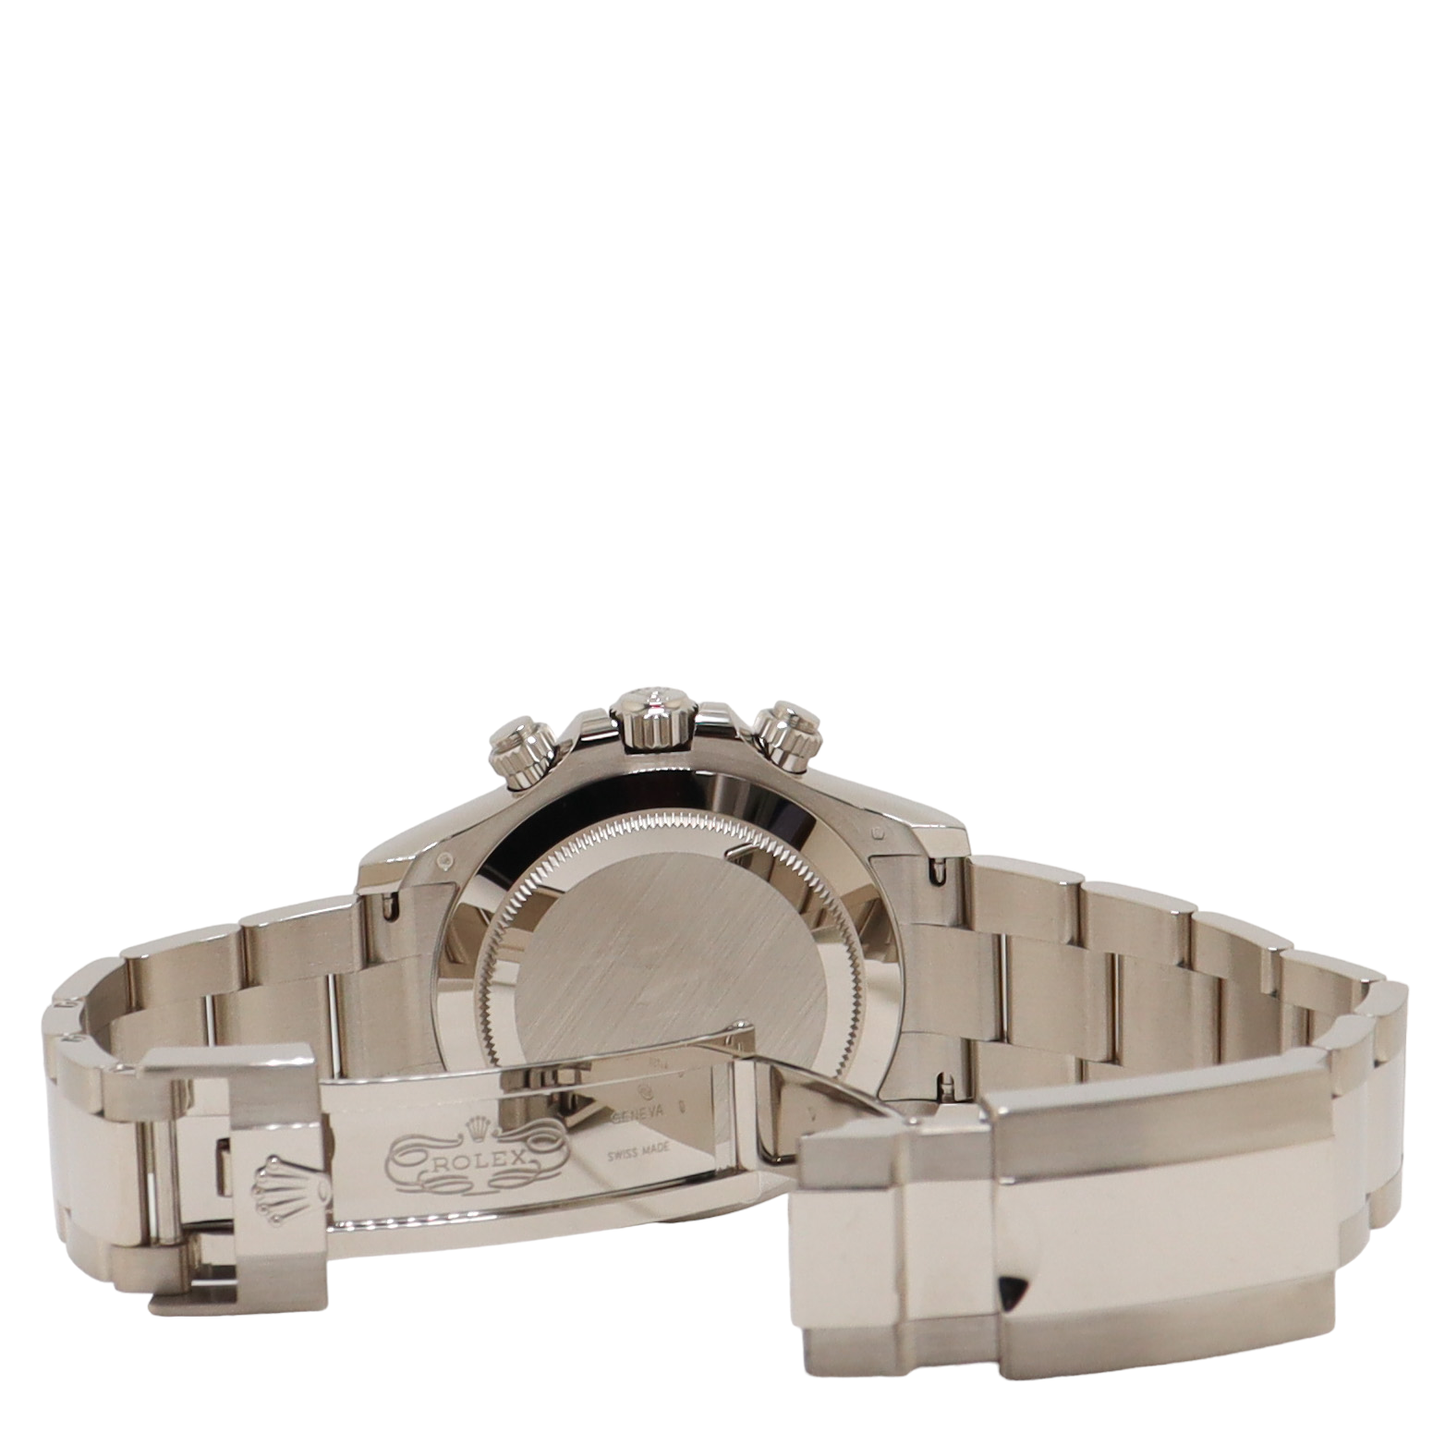 Rolex Daytona White Gold 40mm Black Diamond Chronograph Dial Watch Reference# 116509 - Happy Jewelers Fine Jewelry Lifetime Warranty